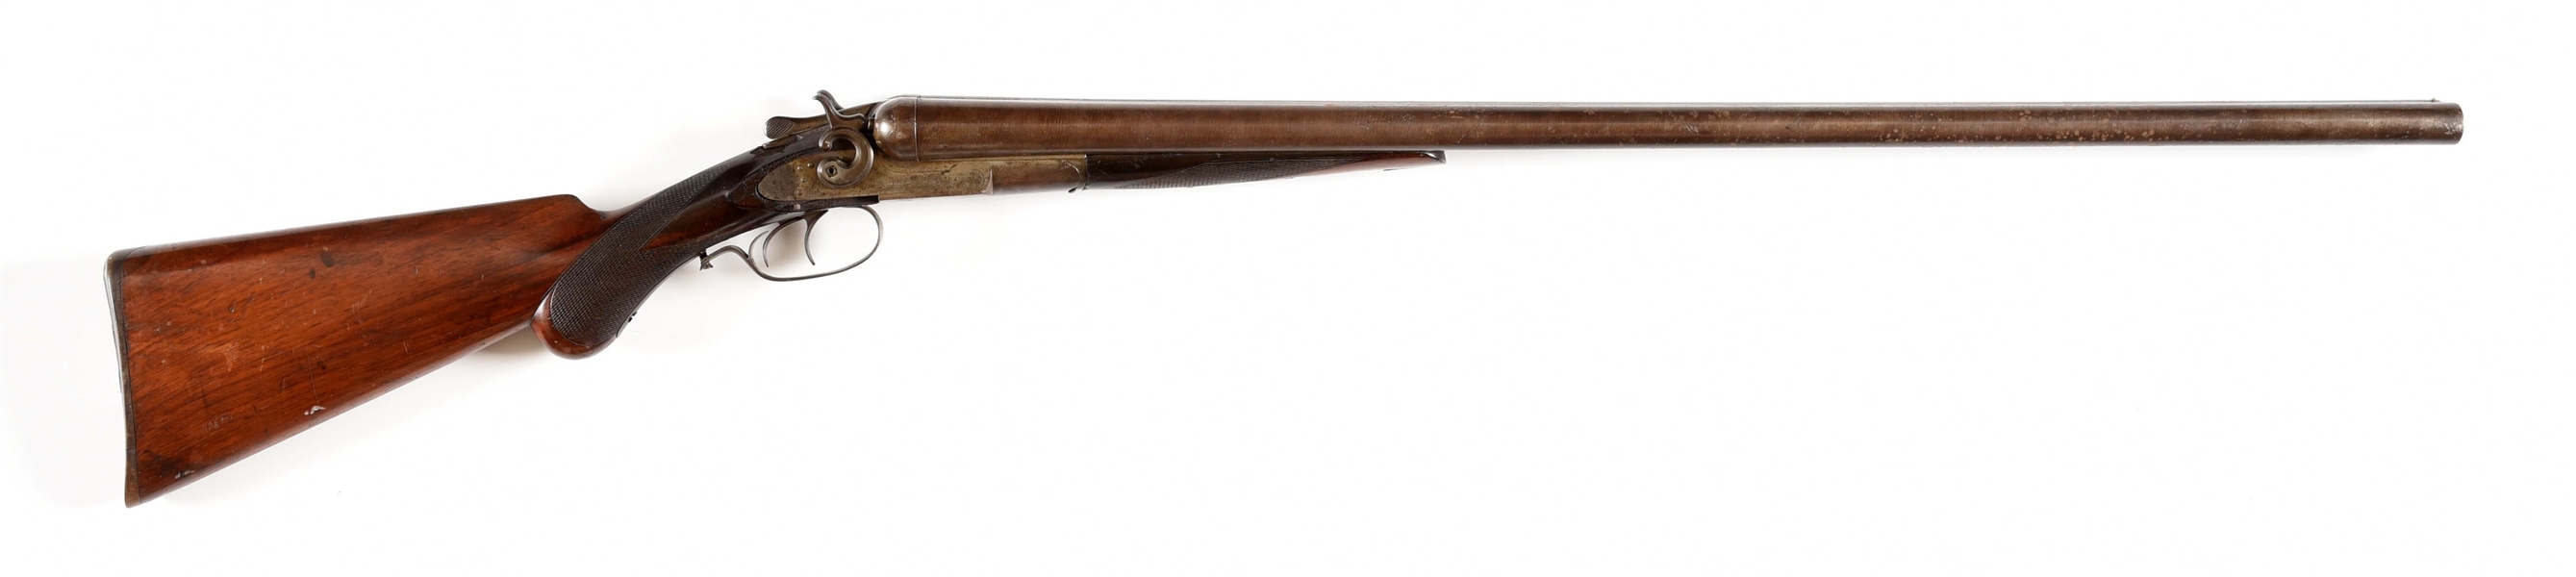 (A) REMINGTON MODEL 1889 SIDE BY SIDE SHOTGUN.